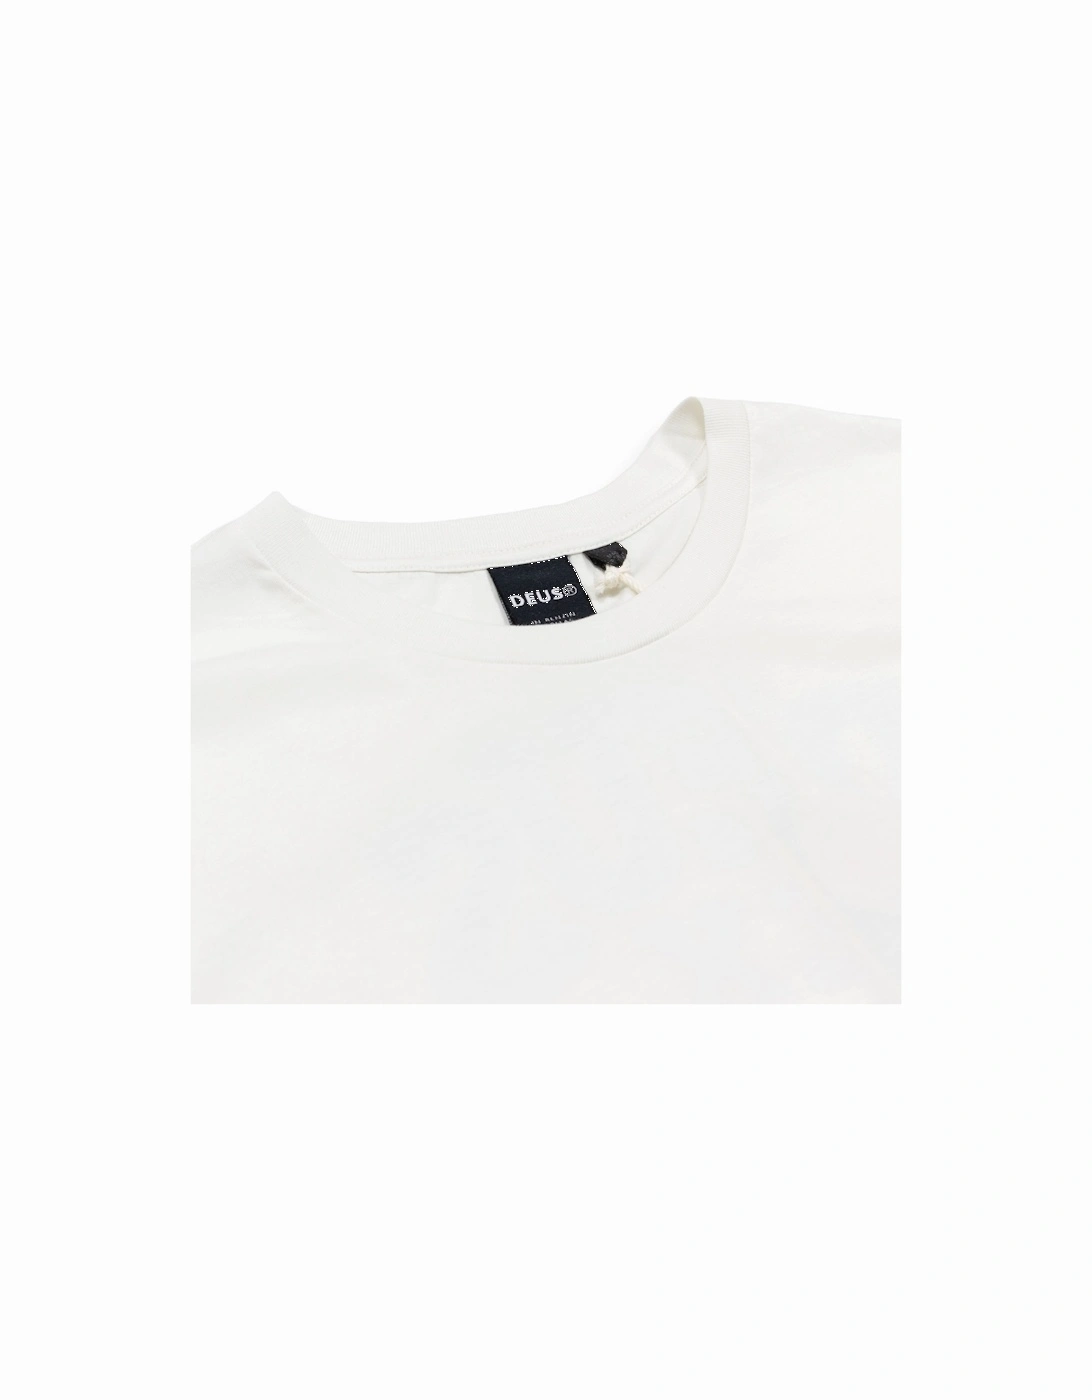 New Redline T-Shirt - Vintage White